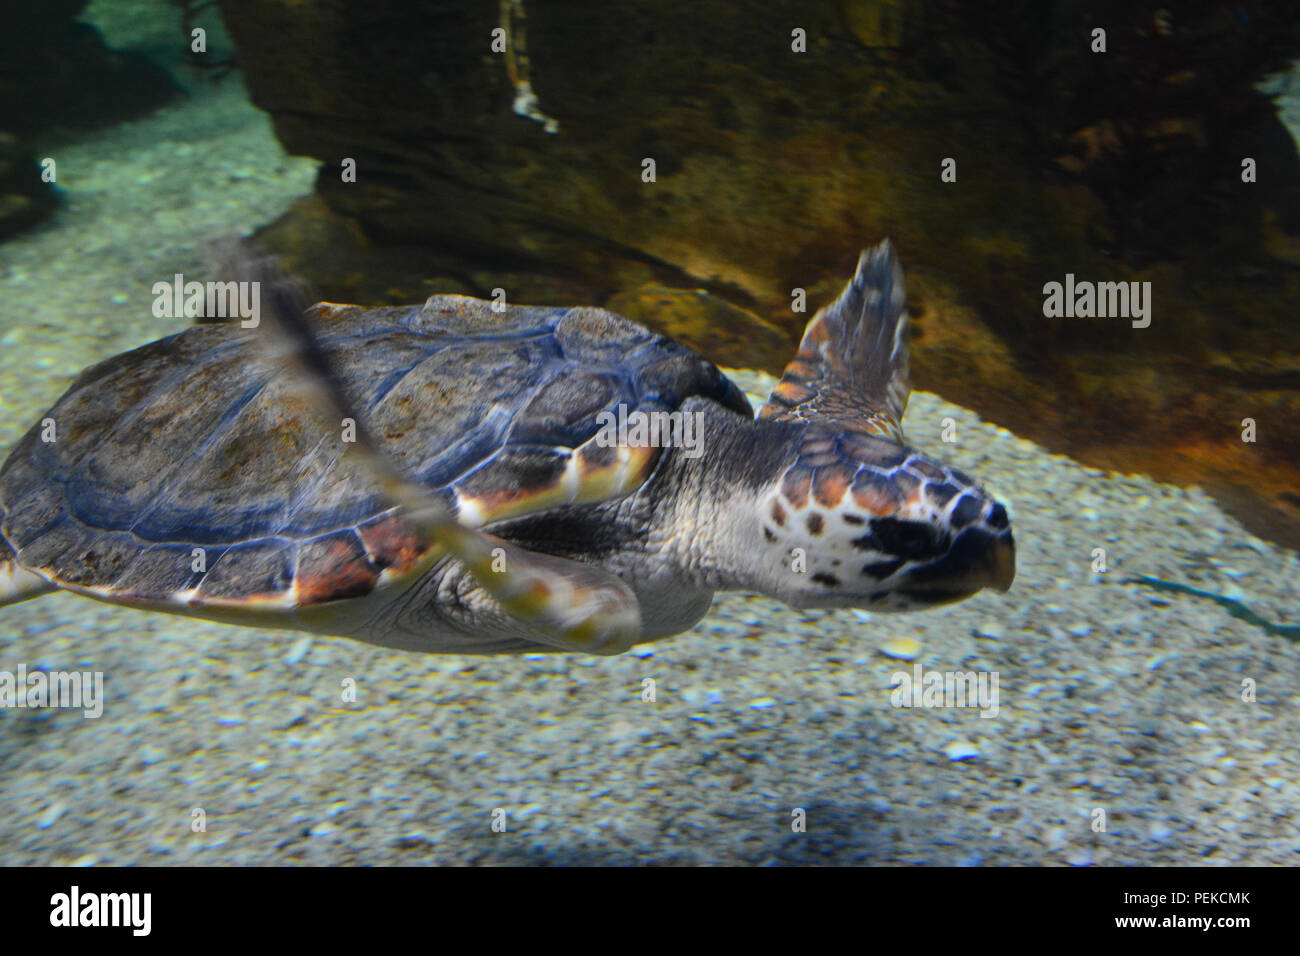 La tartaruga nuota sott'acqua Foto Stock